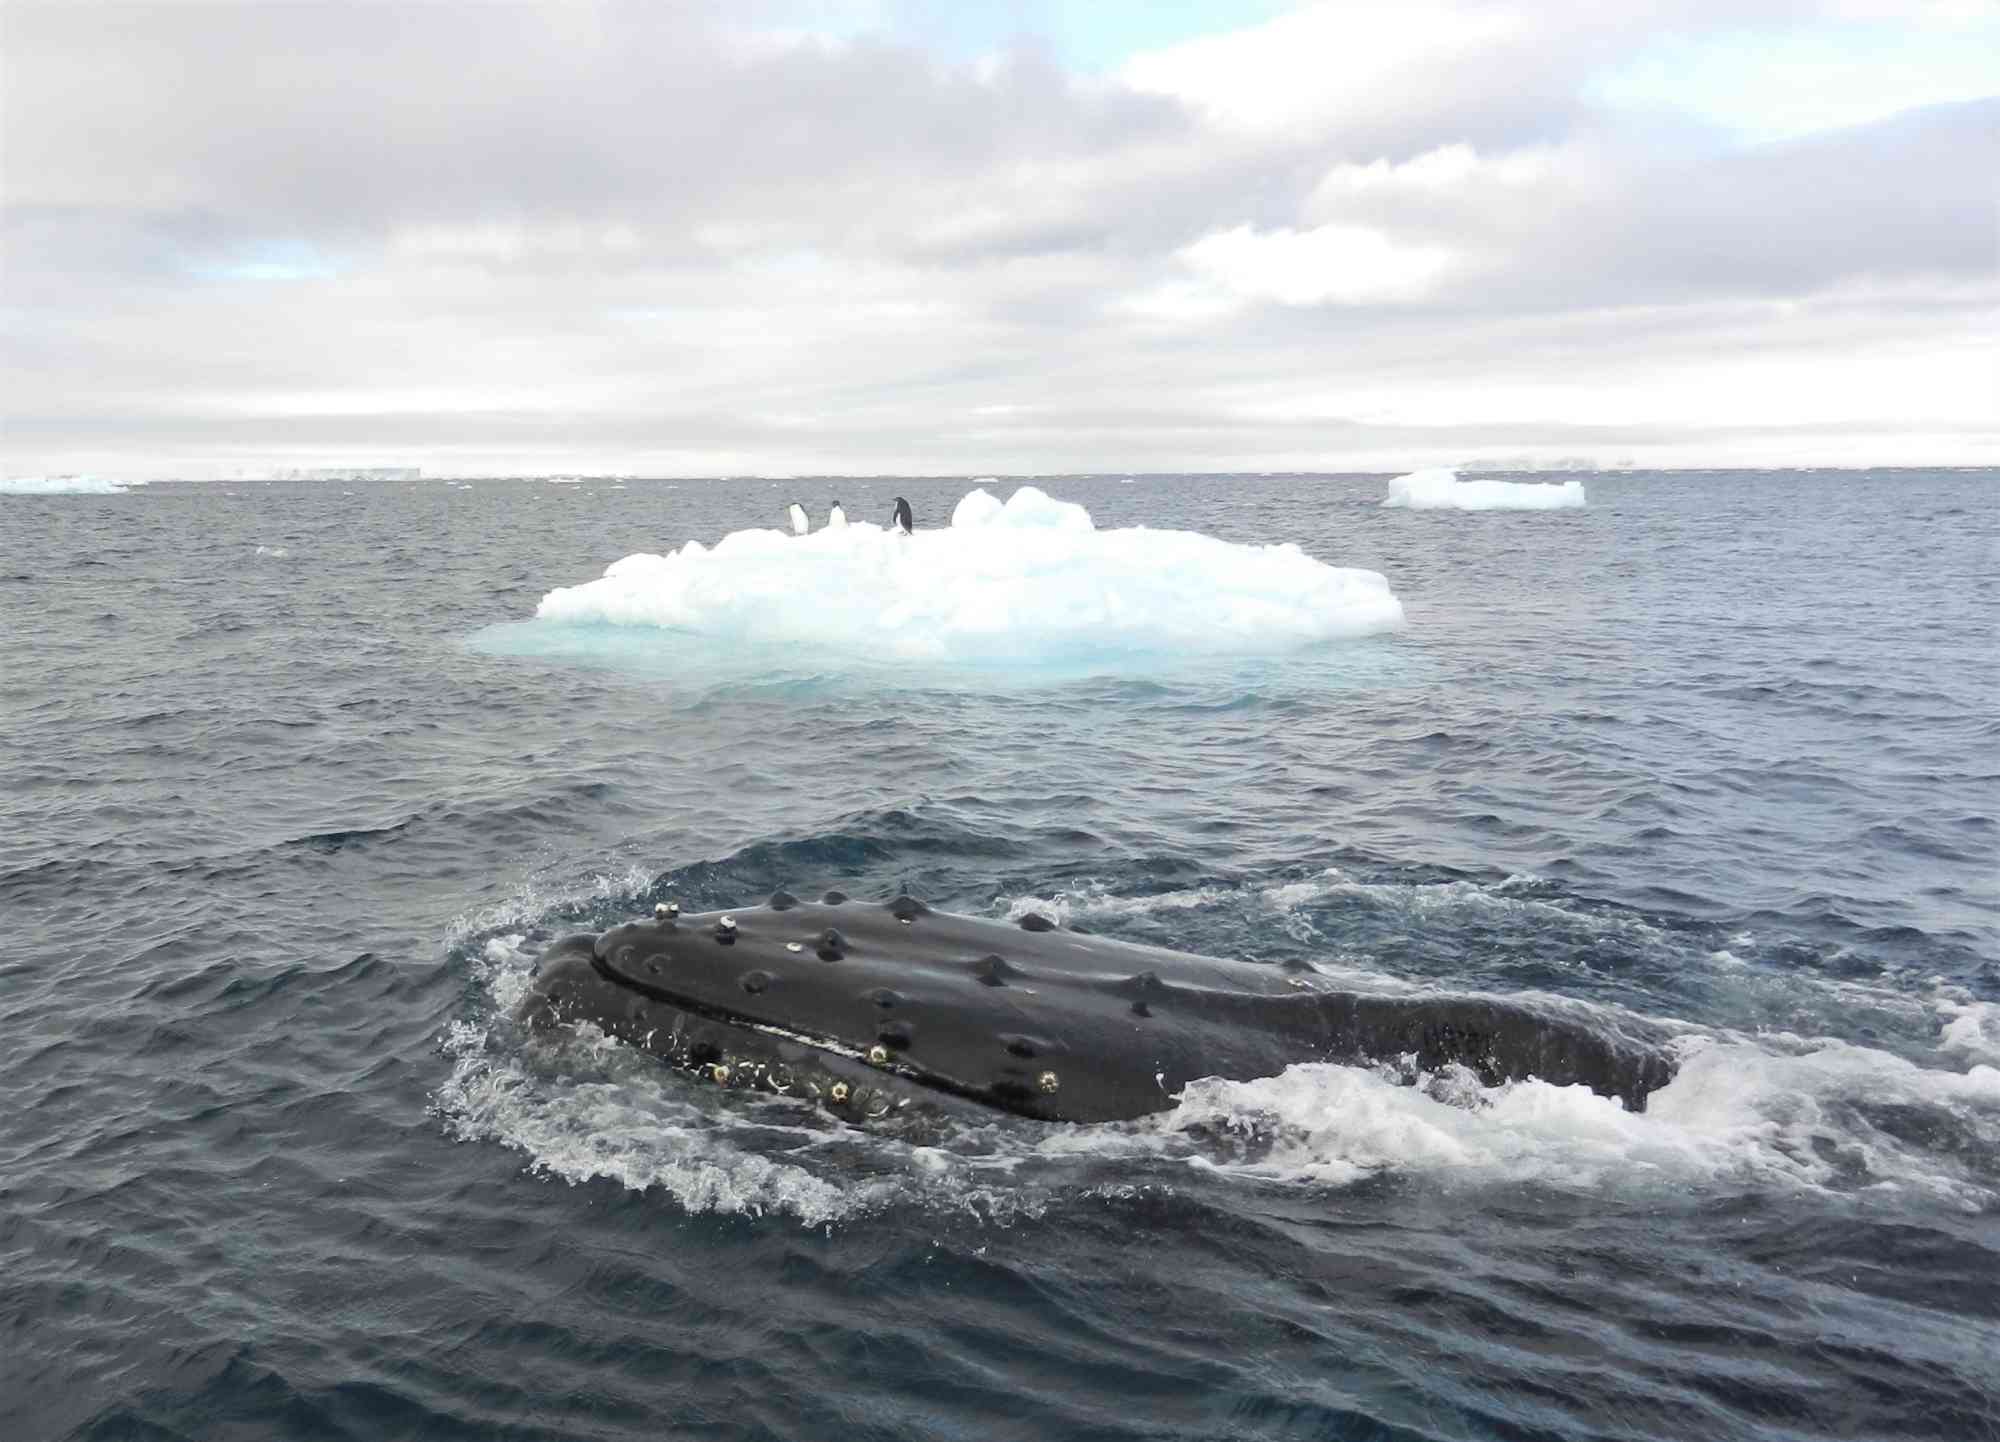 humpback whale head